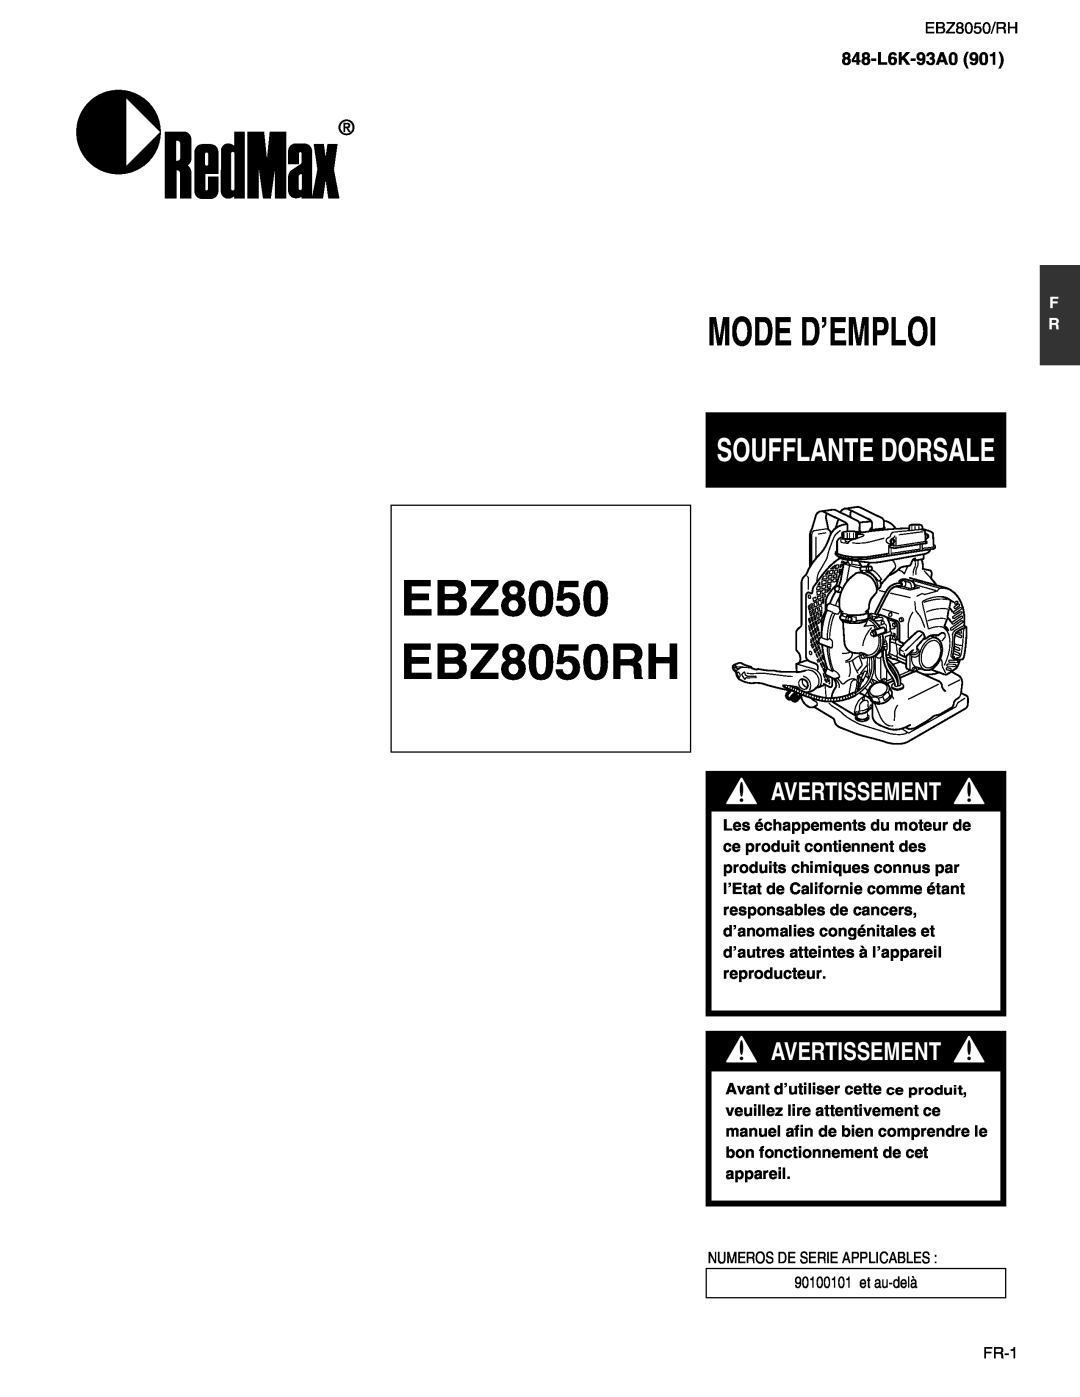 RedMax manual Mode D’Emploi, Soufflante Dorsale, EBZ8050 EBZ8050RH, Avertissement, 848-L6K-93A0 